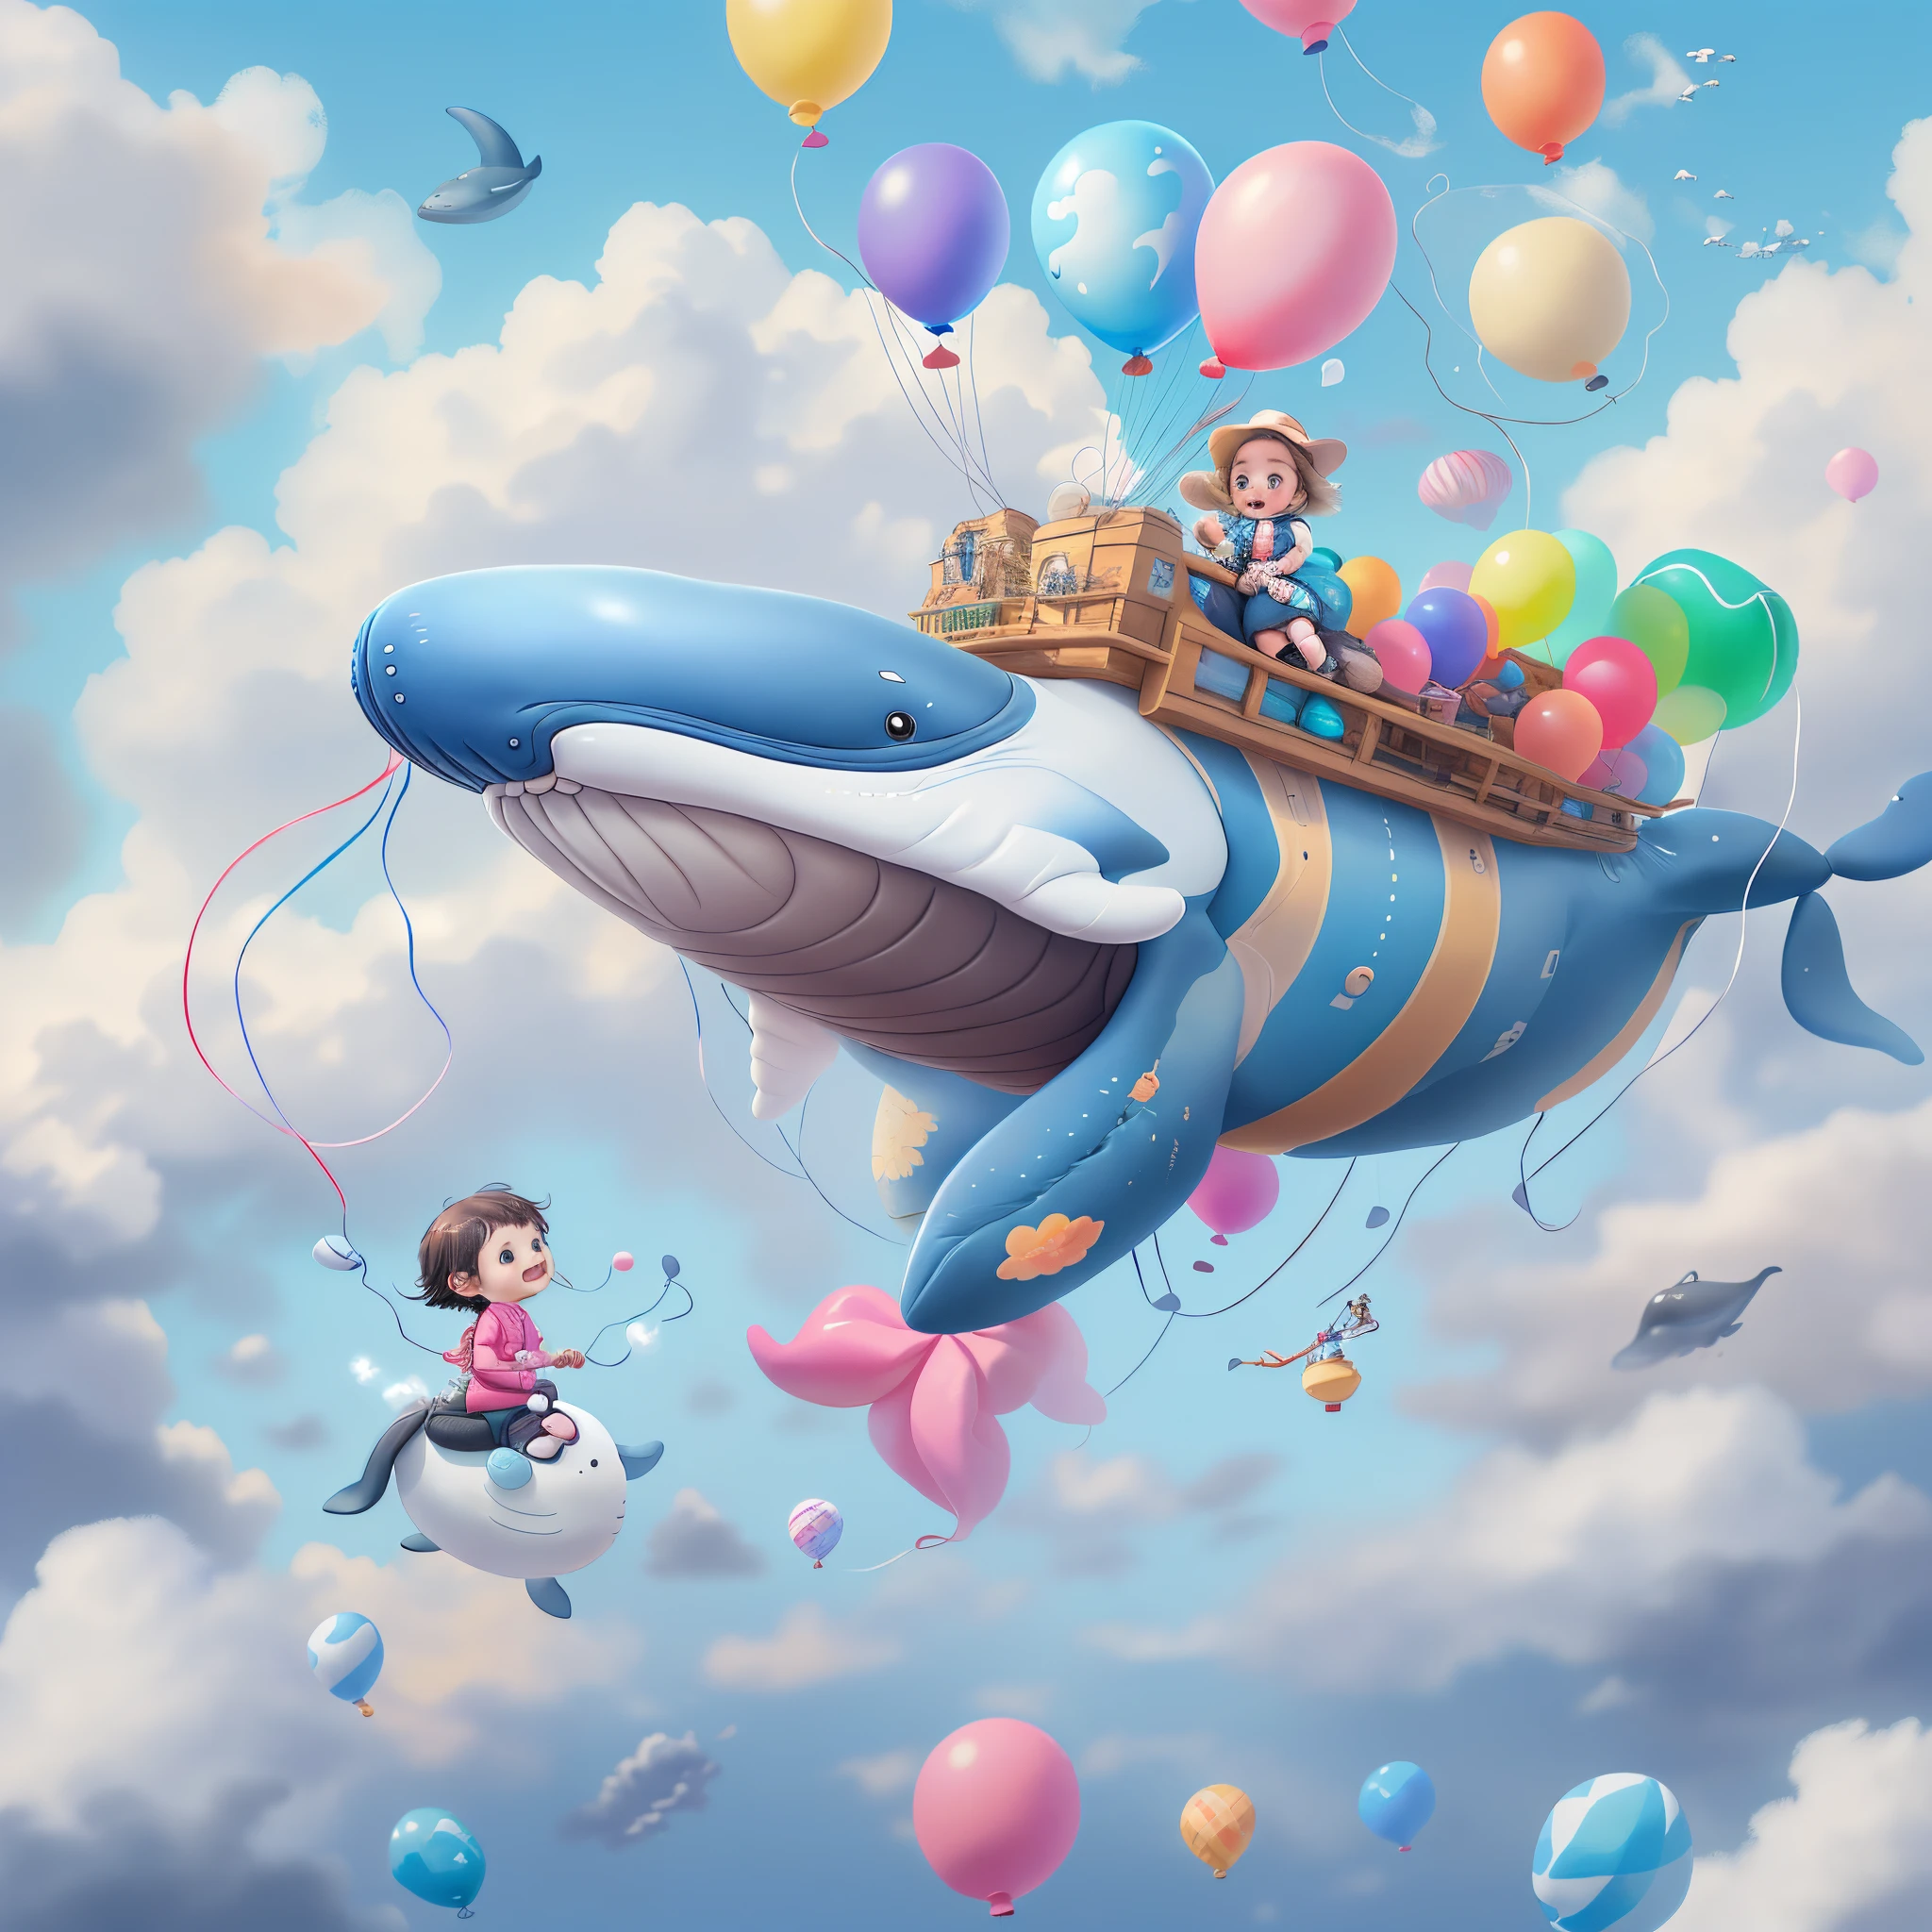 ((1  riding a whale made of Luftballons))，Fröhlich lachen，Fliege in den Wolken，Luftballons，mit blauem Himmel und weißen Wolken，schaut in die Kamera, Niedliche und detaillierte digitale Kunst, schönes digitales Gemälde, Süßer Ballonwal, Schöne, detaillierte Kunstwerke, süßes 3D-Rendering, digitale Malerei sehr detailliert, süß und bunt, süß, hochdetailliertes digitales Kunstwerk, Detailliert und farbenfroh